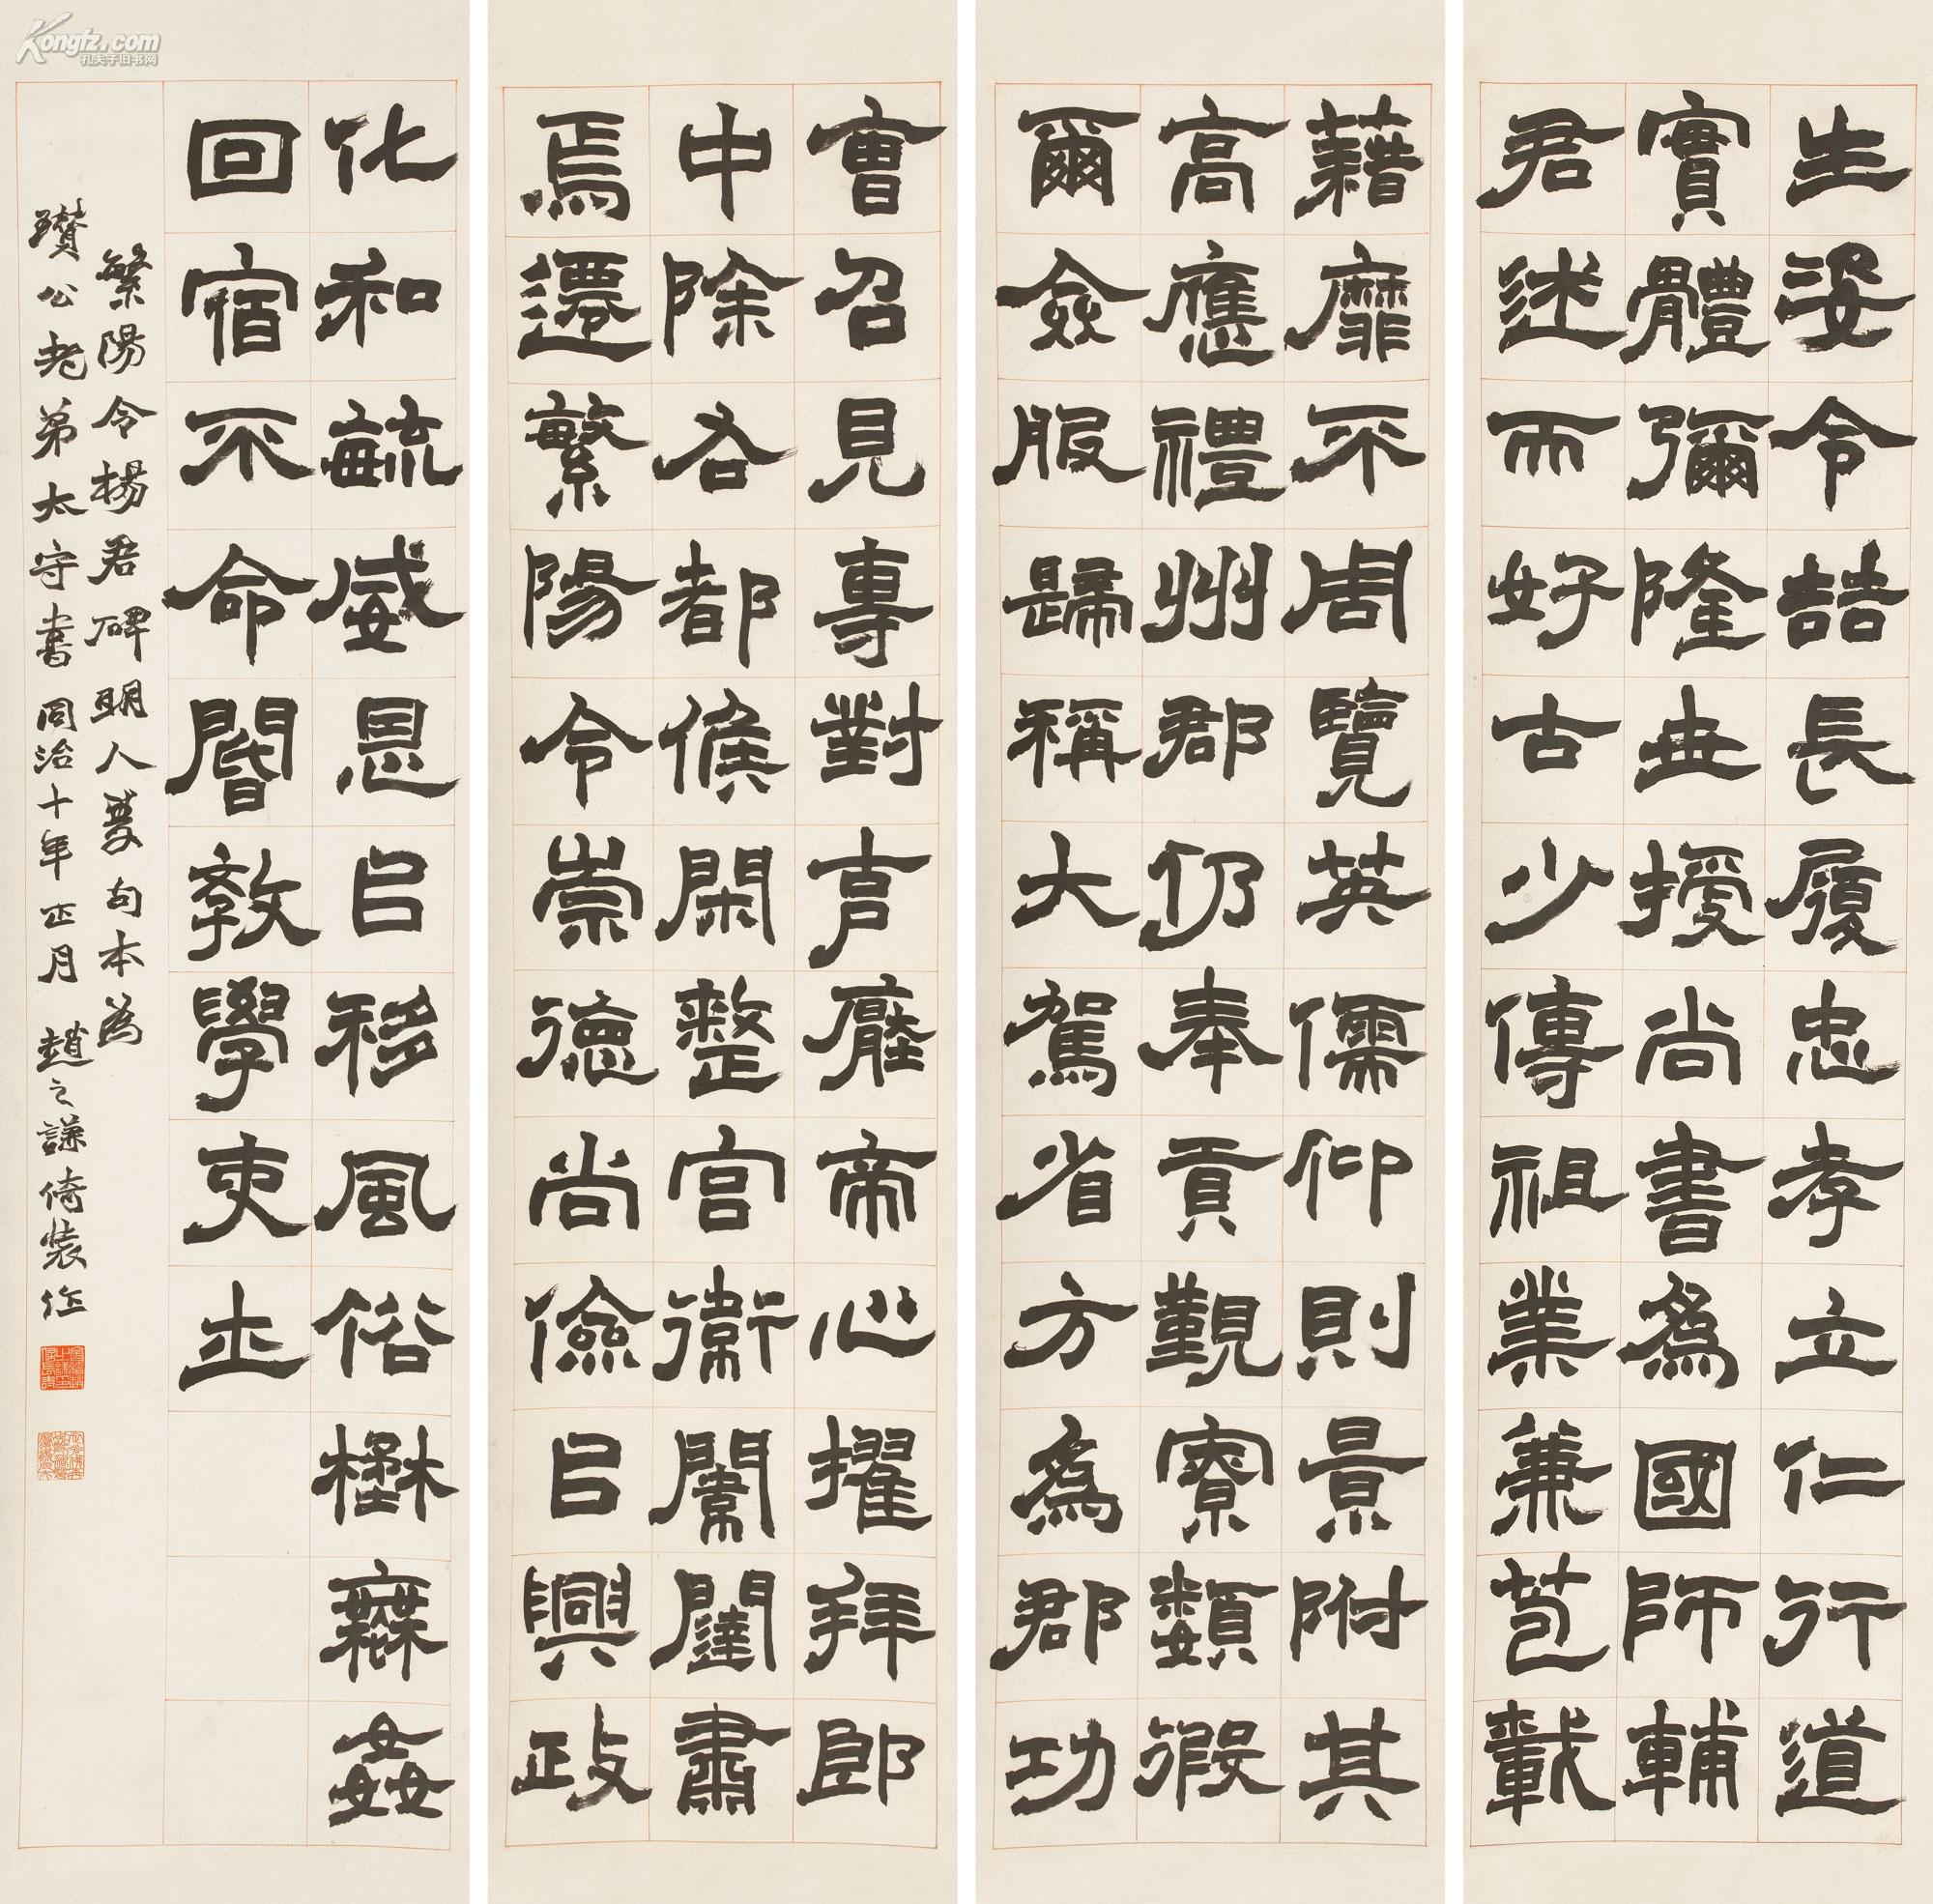 赵之谦(1829-1884)隶书临《繁阳令阳君碑》 四屏